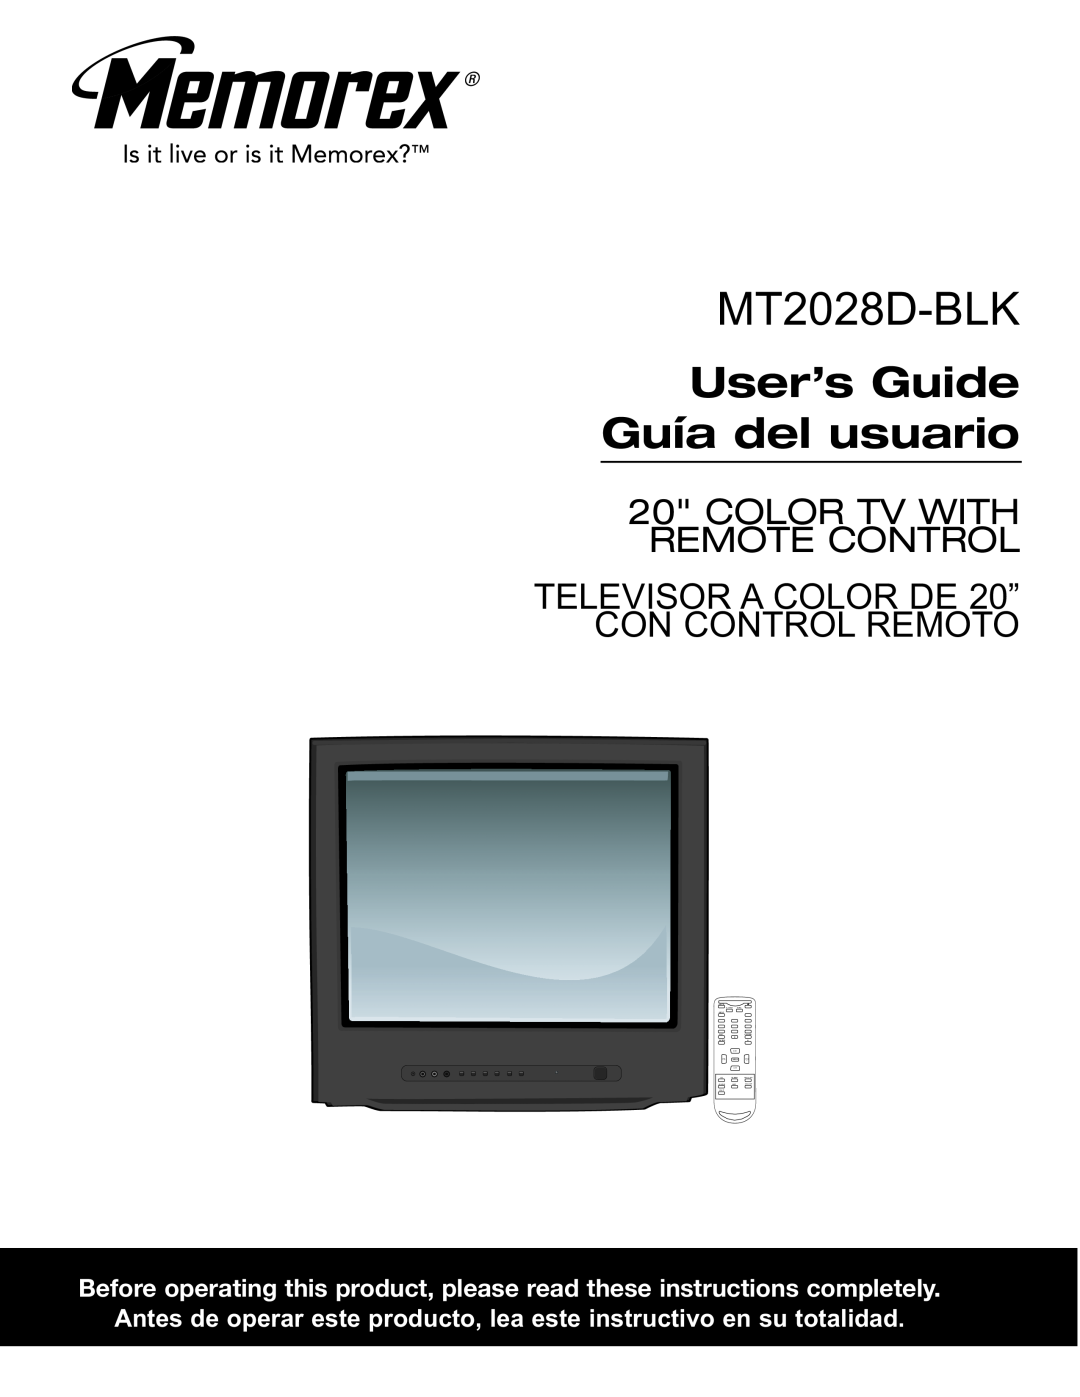 Memorex MT2028D-BLK manual User’s Guide Guía del usuario 